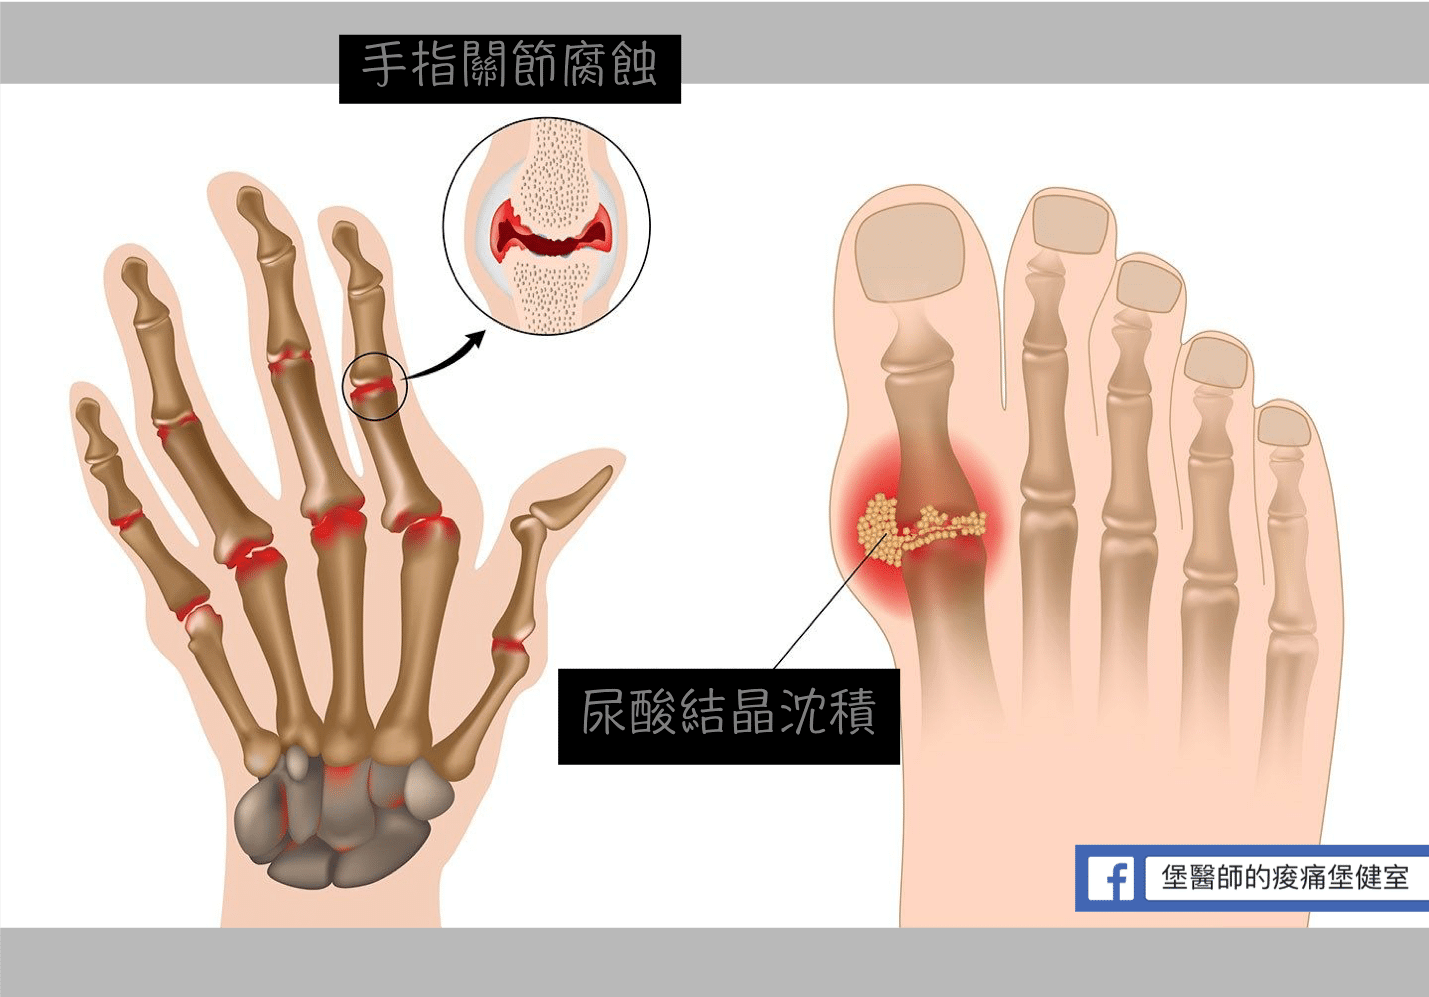 尿酸結晶堆積及手指關節腐蝕